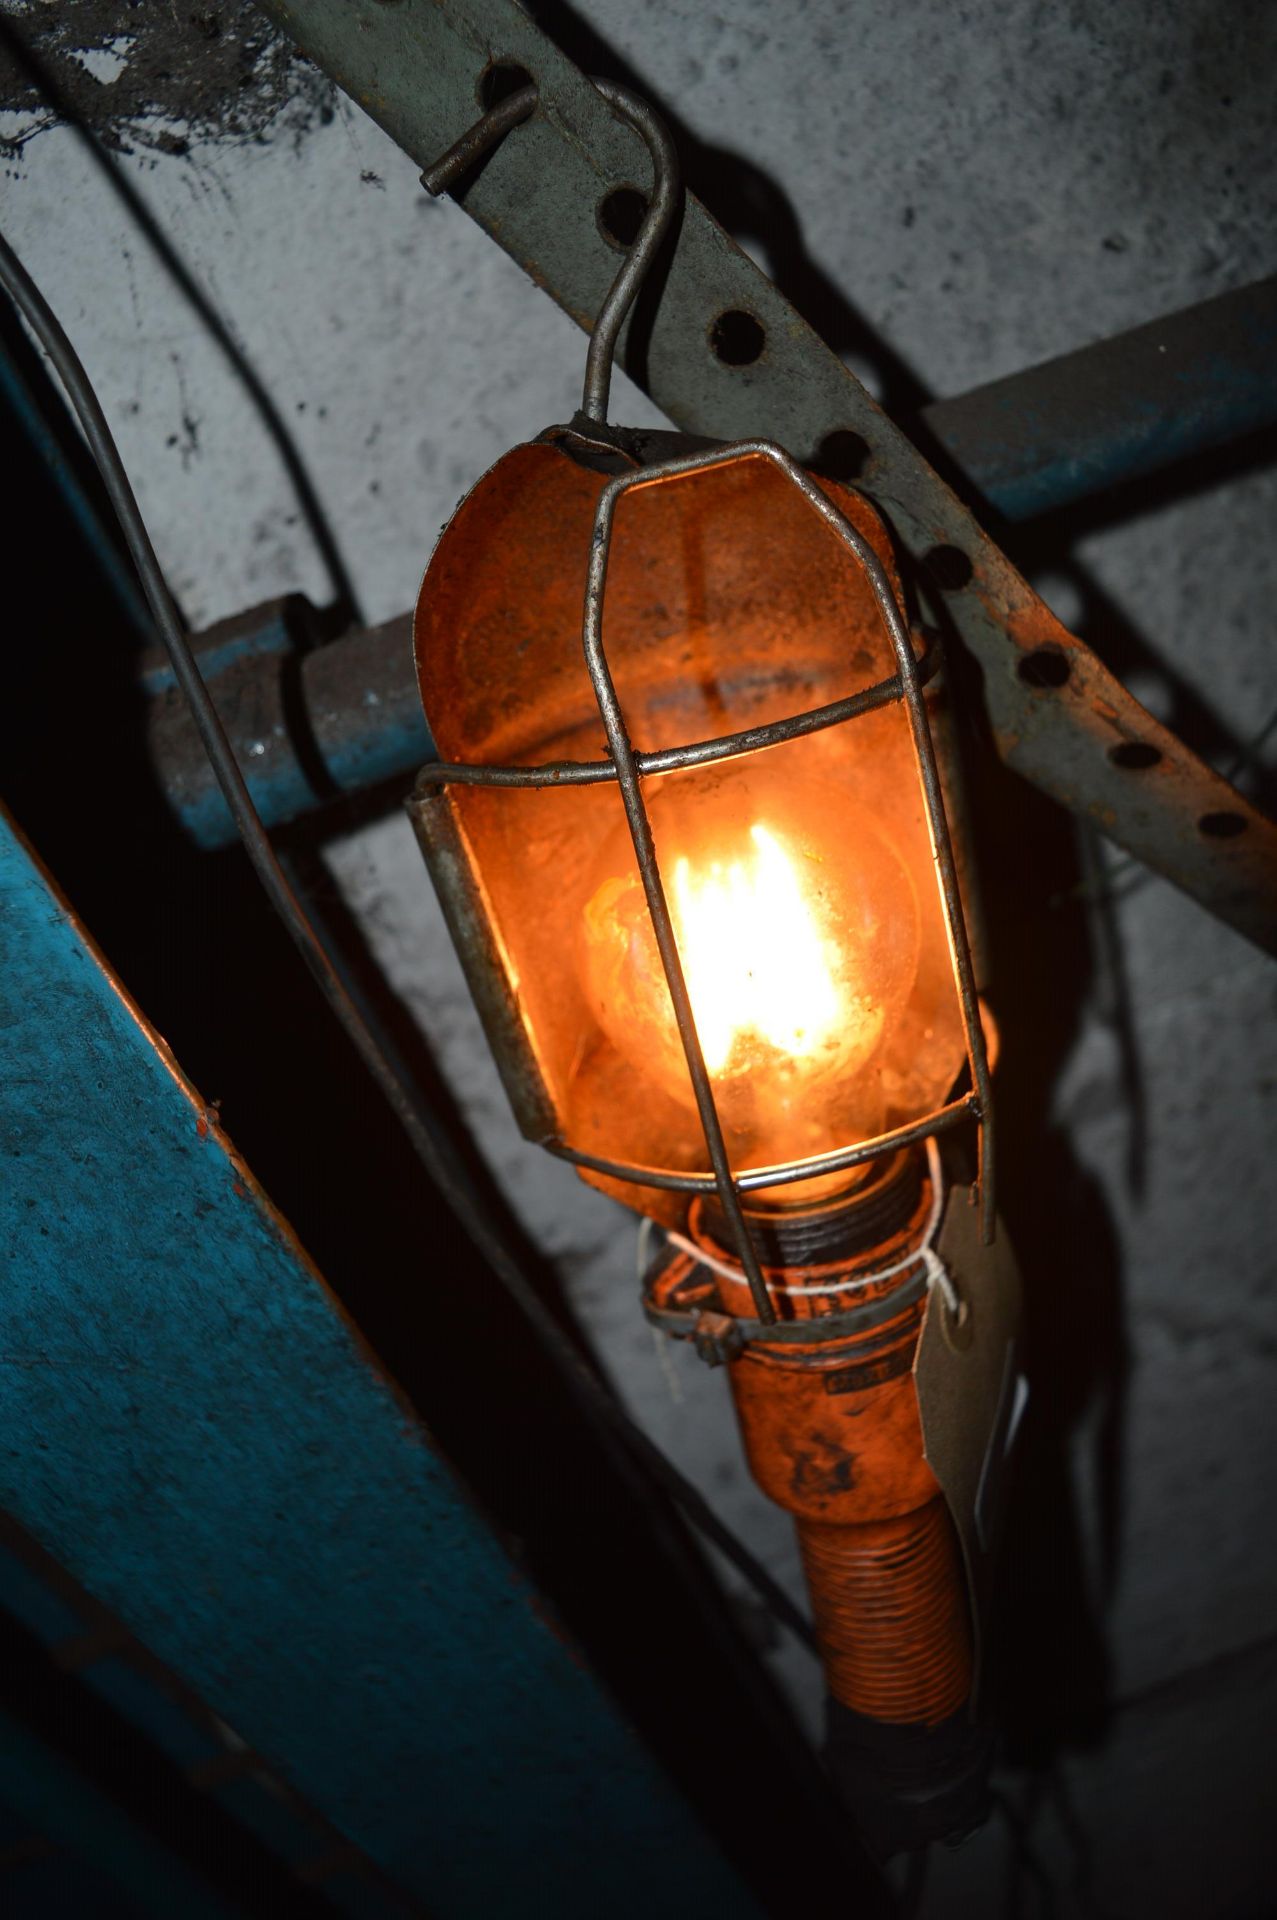 Workshop Inspection Lamp - Image 2 of 2